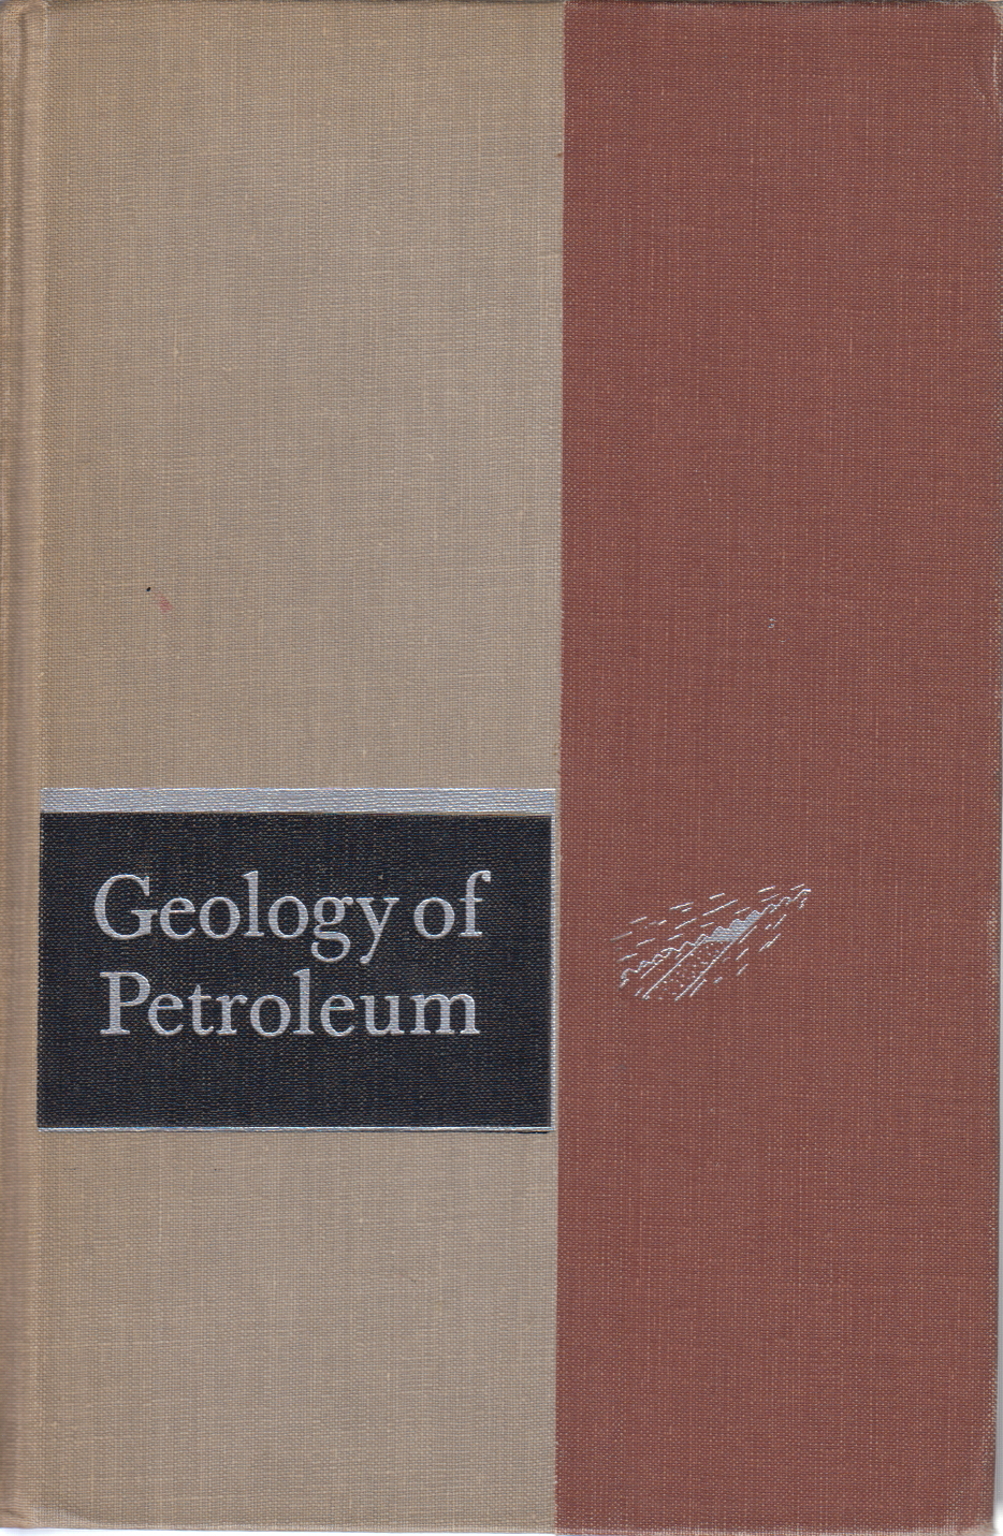 La geología del petróleo, A. I. Levorsen